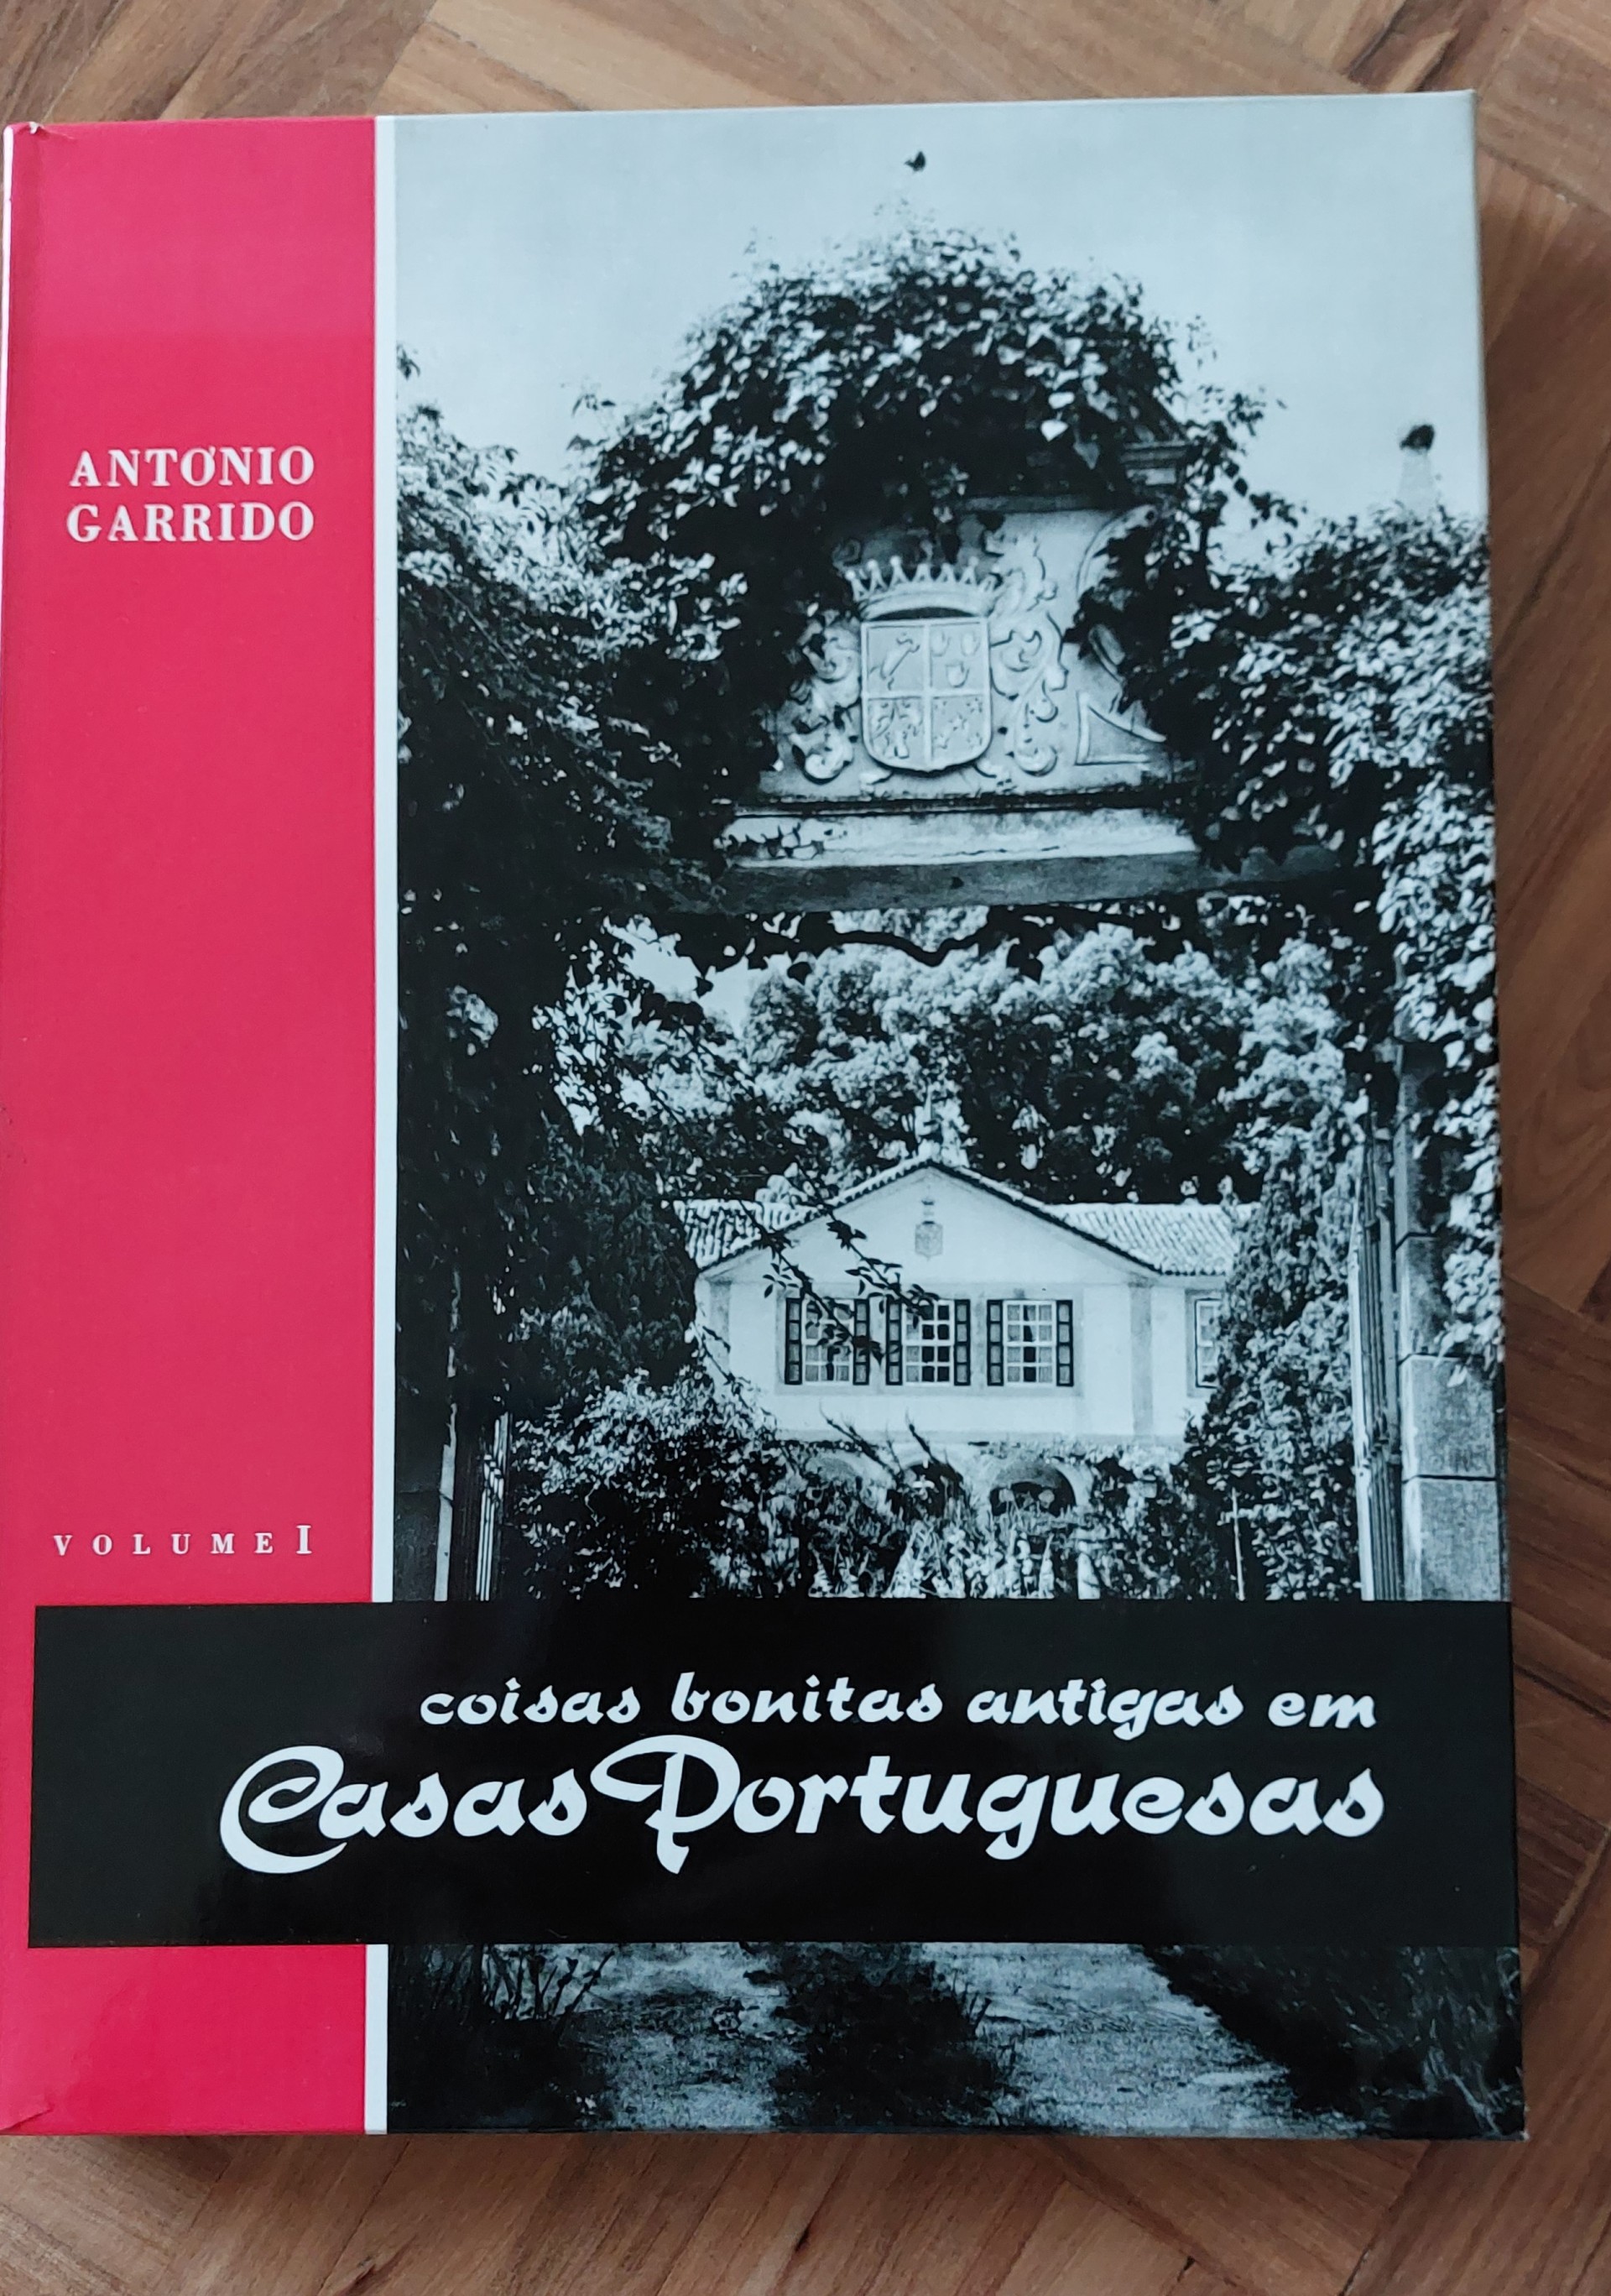 Coisas bonitas antigas em casas portuguesas